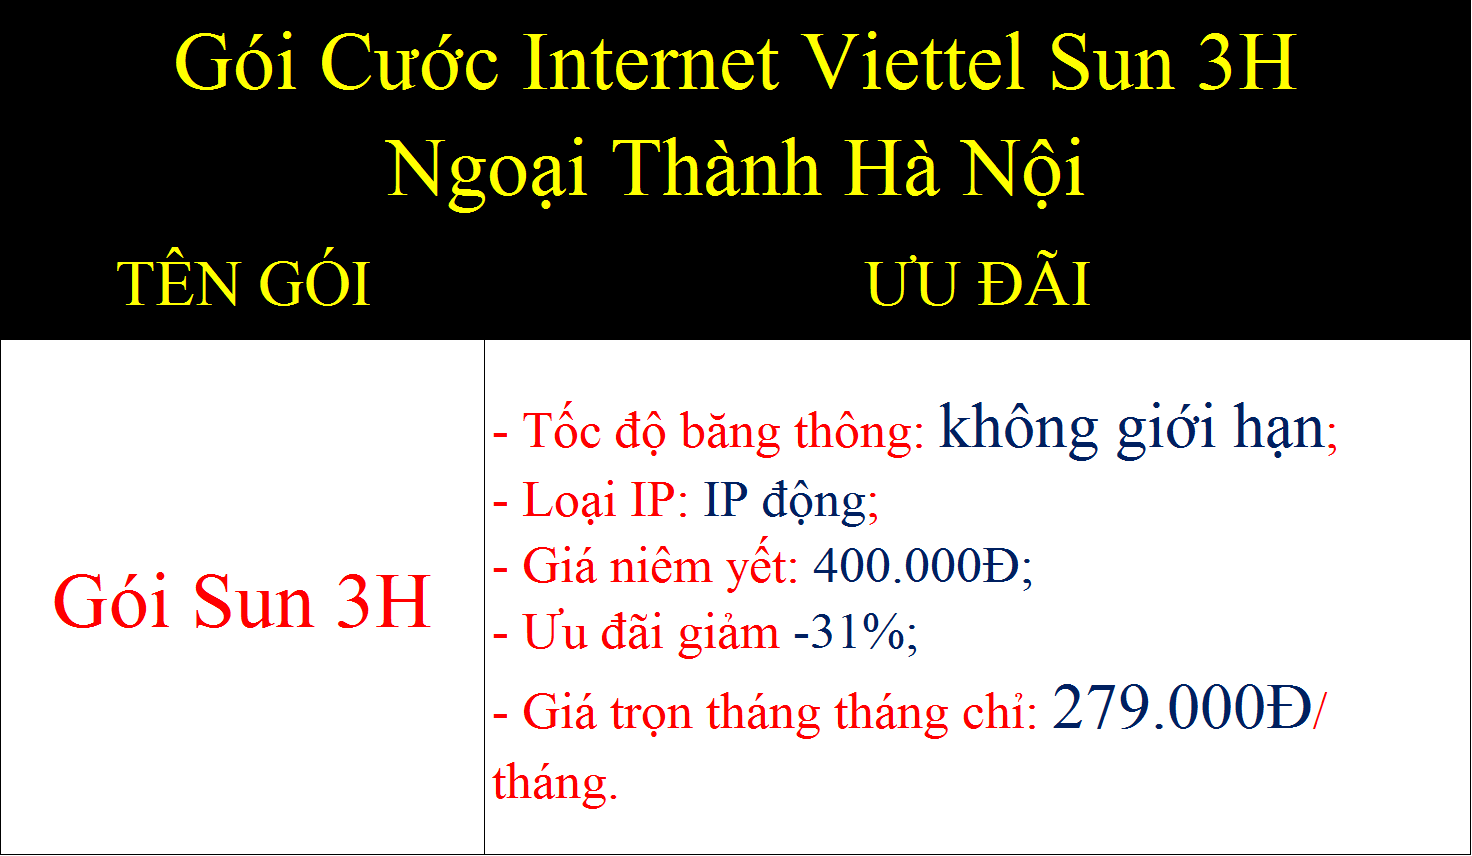 Gói cước internet Viettel Sun 3H ngoại thành Hà Nội